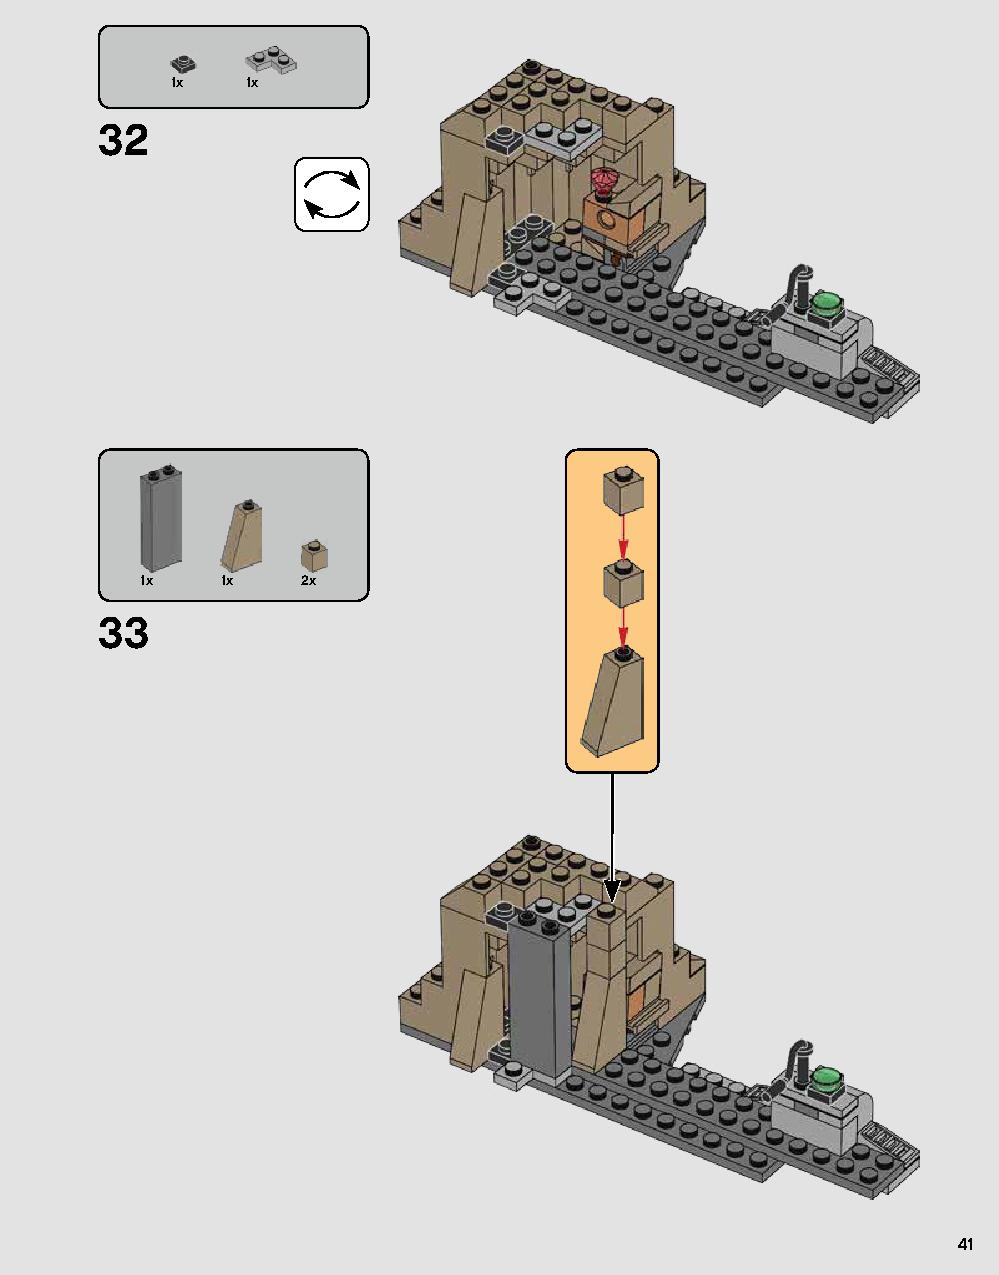 ダース・ベイダーの城 75251 レゴの商品情報 レゴの説明書・組立方法 41 page